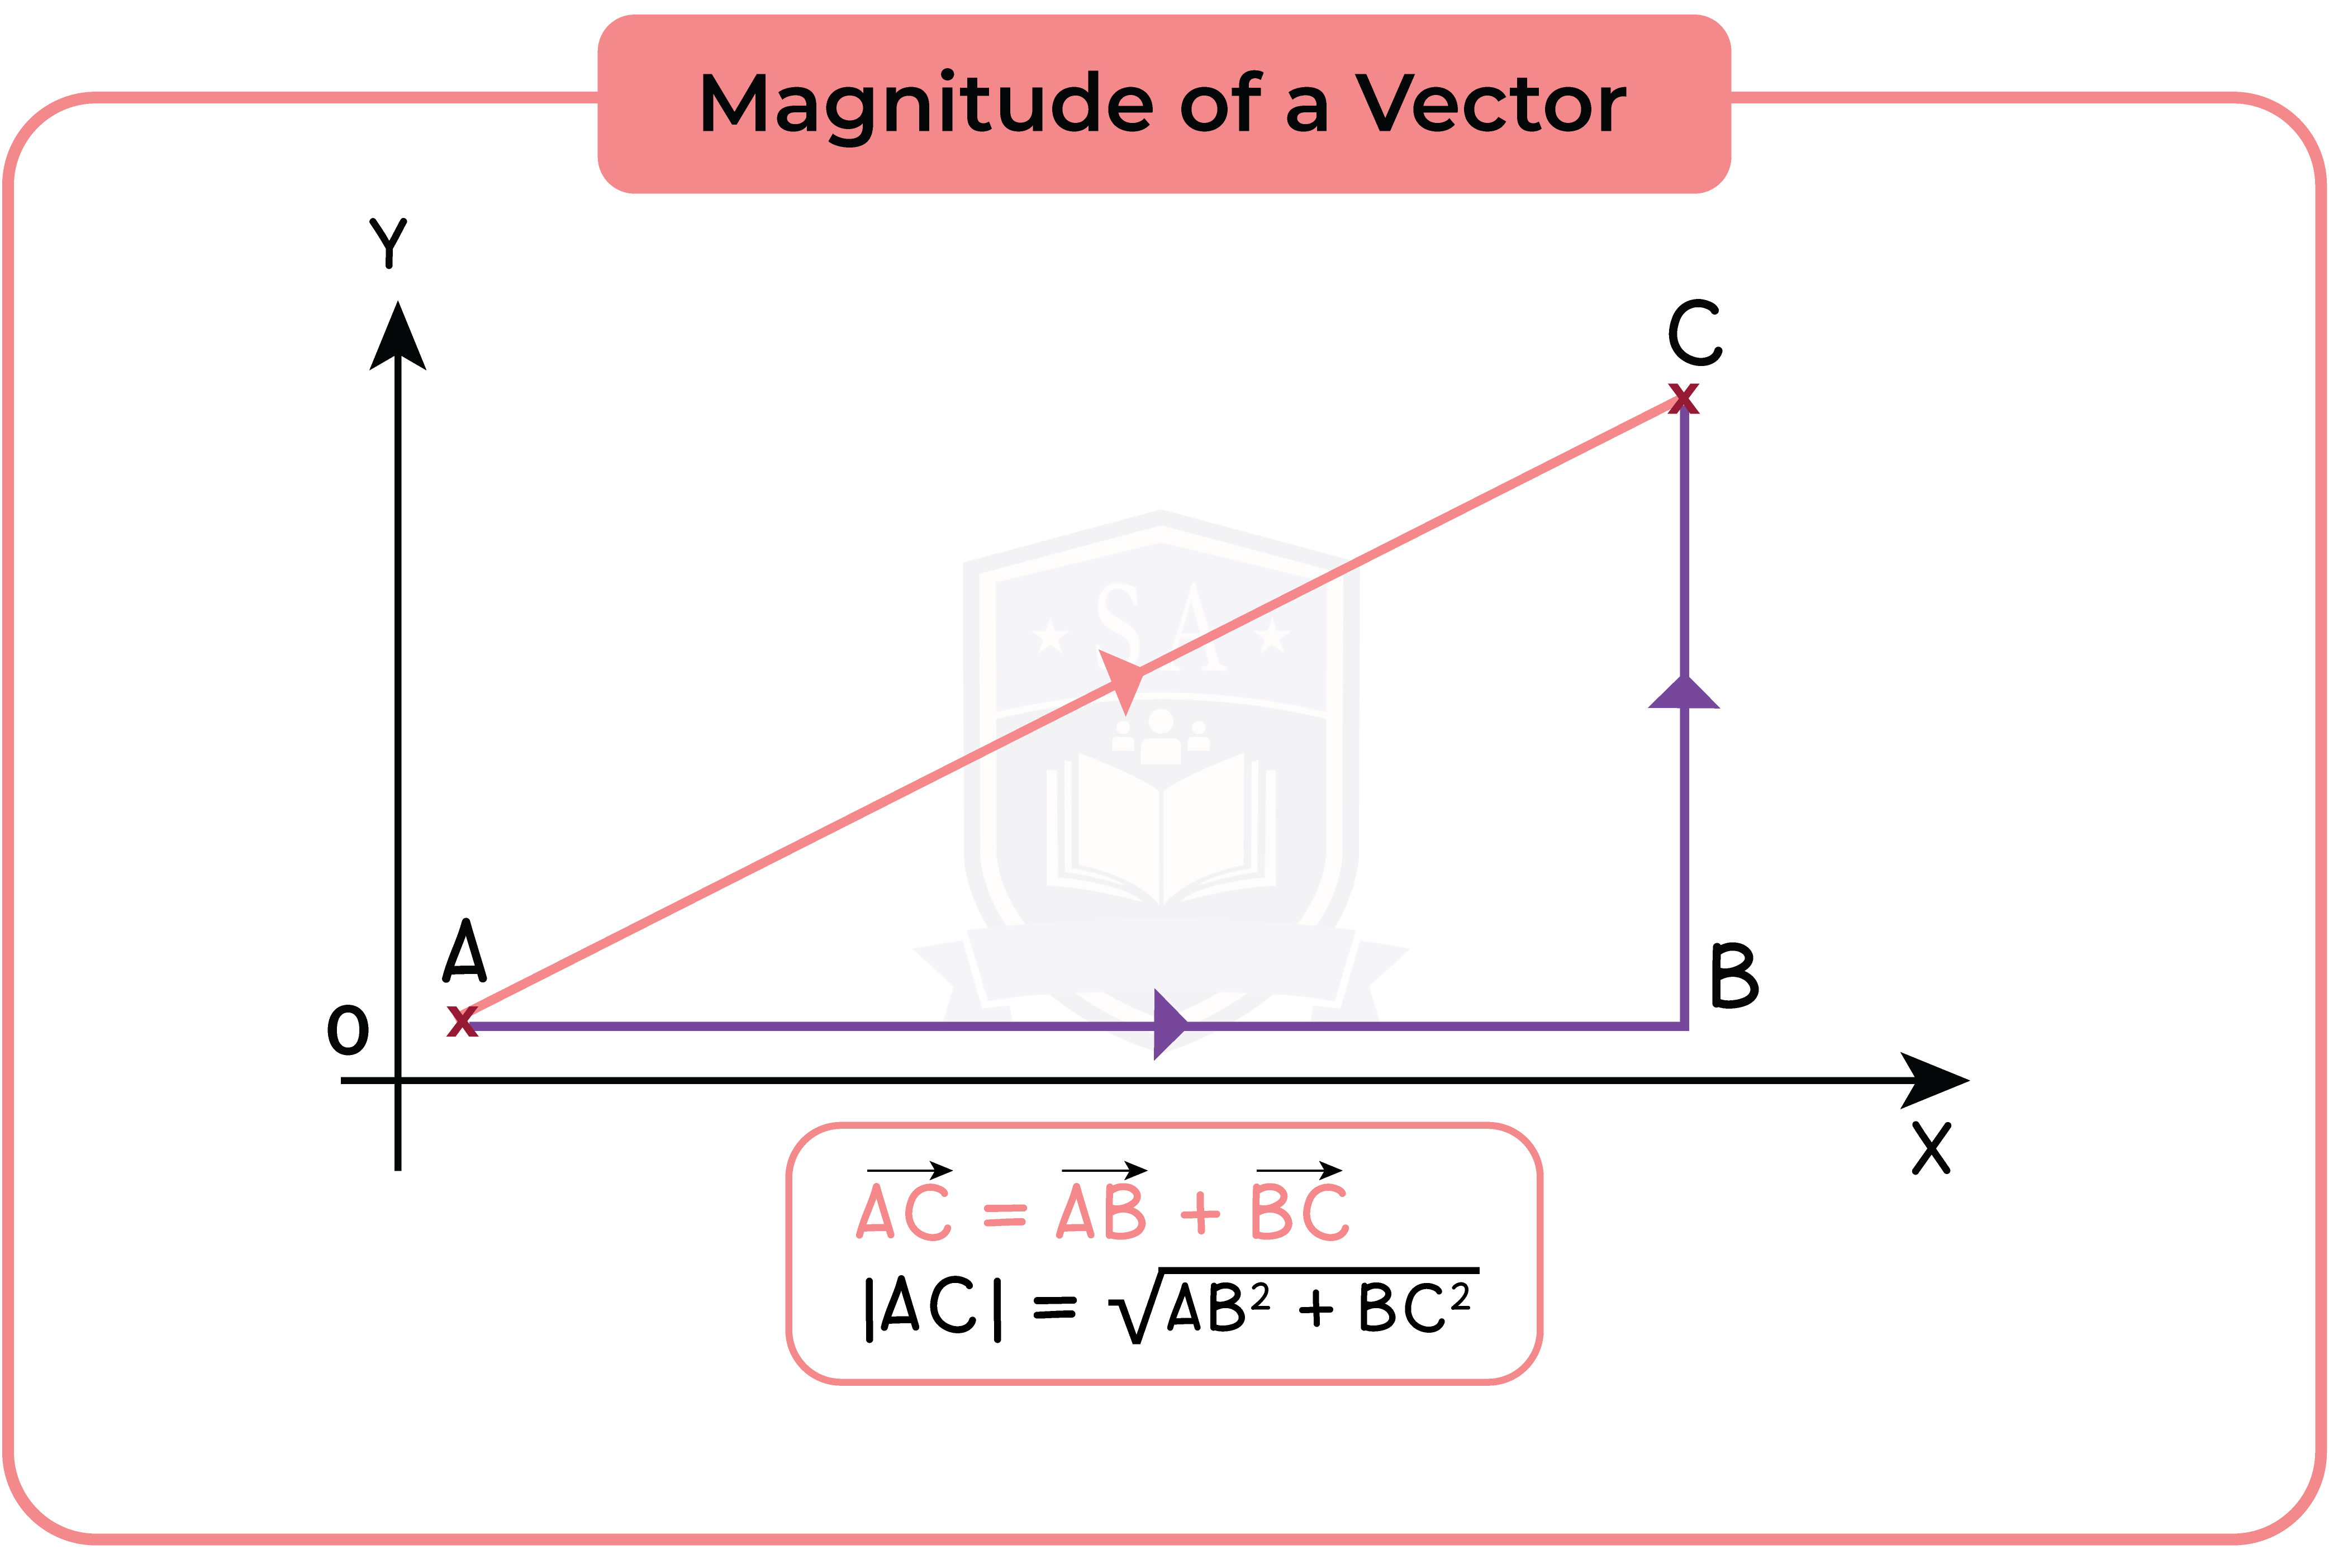 edexcel_igcse_mathematics a_topic 36_vectors_008_Magnitude of a Vector